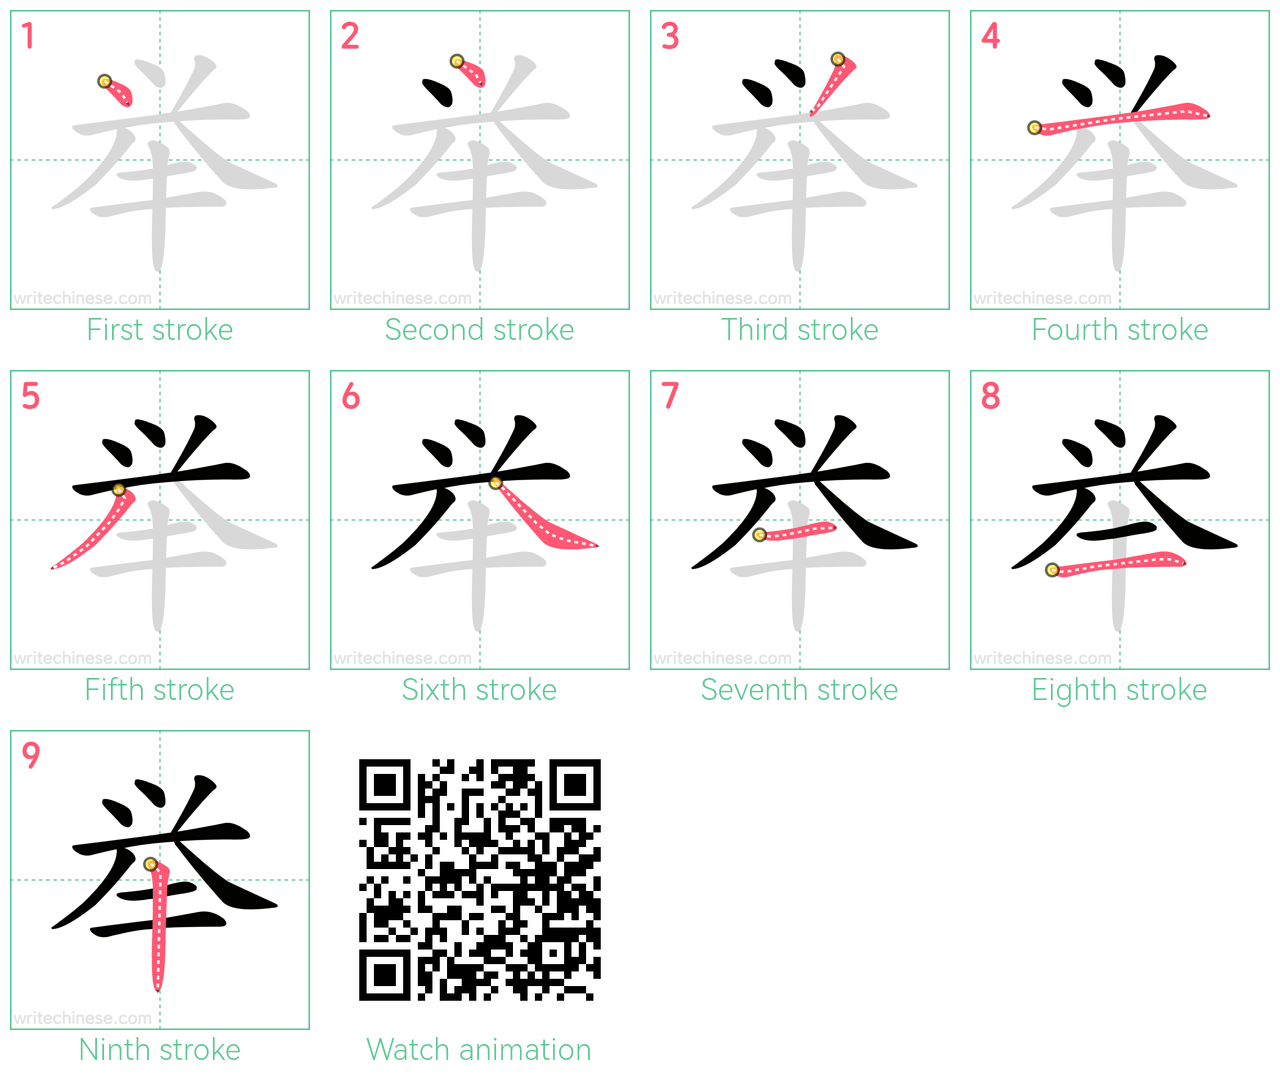 举 step-by-step stroke order diagrams